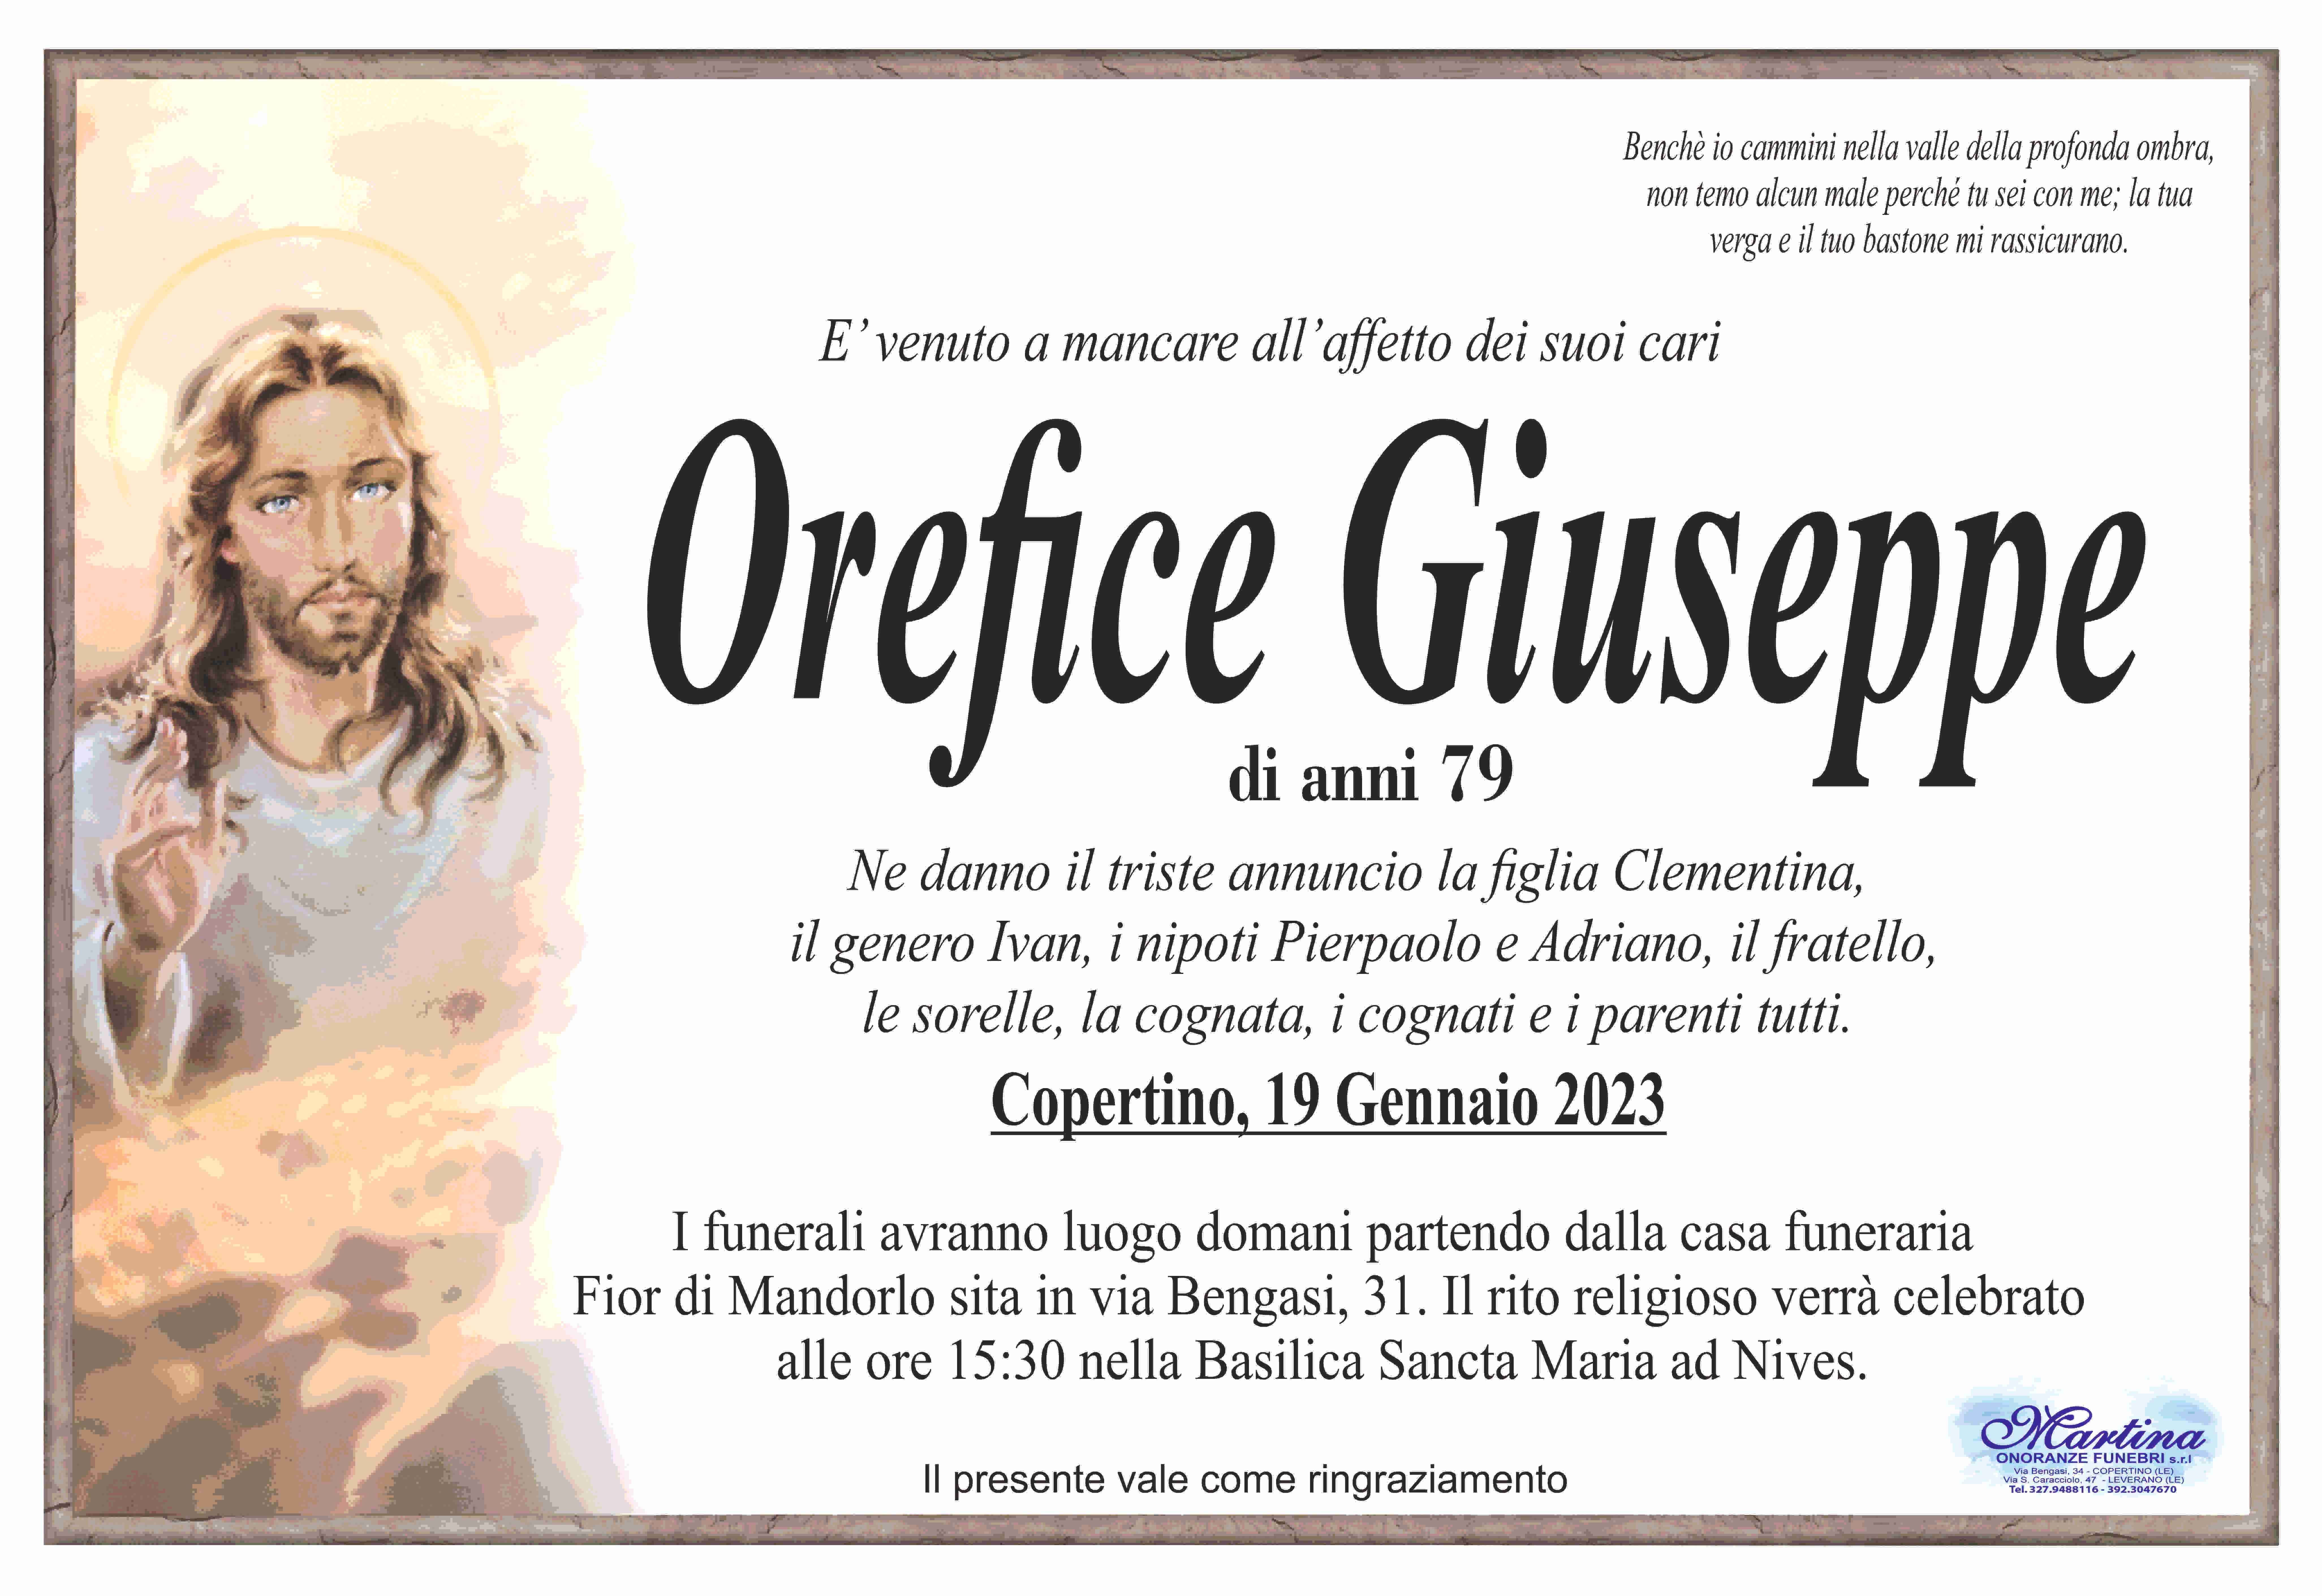 Giuseppe Orefice